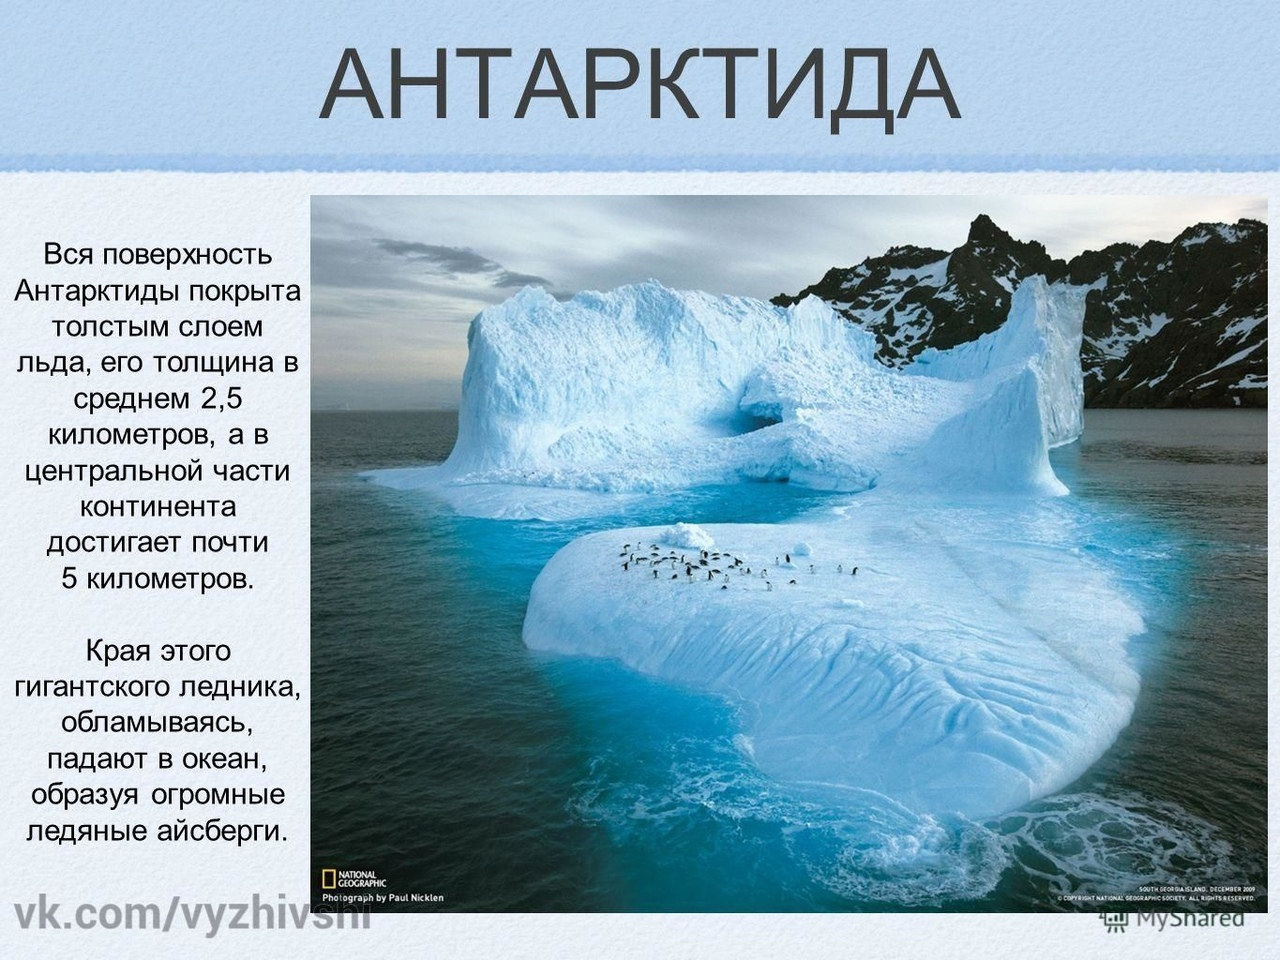 Арктика - географическое положение, происхождение названия, площадь